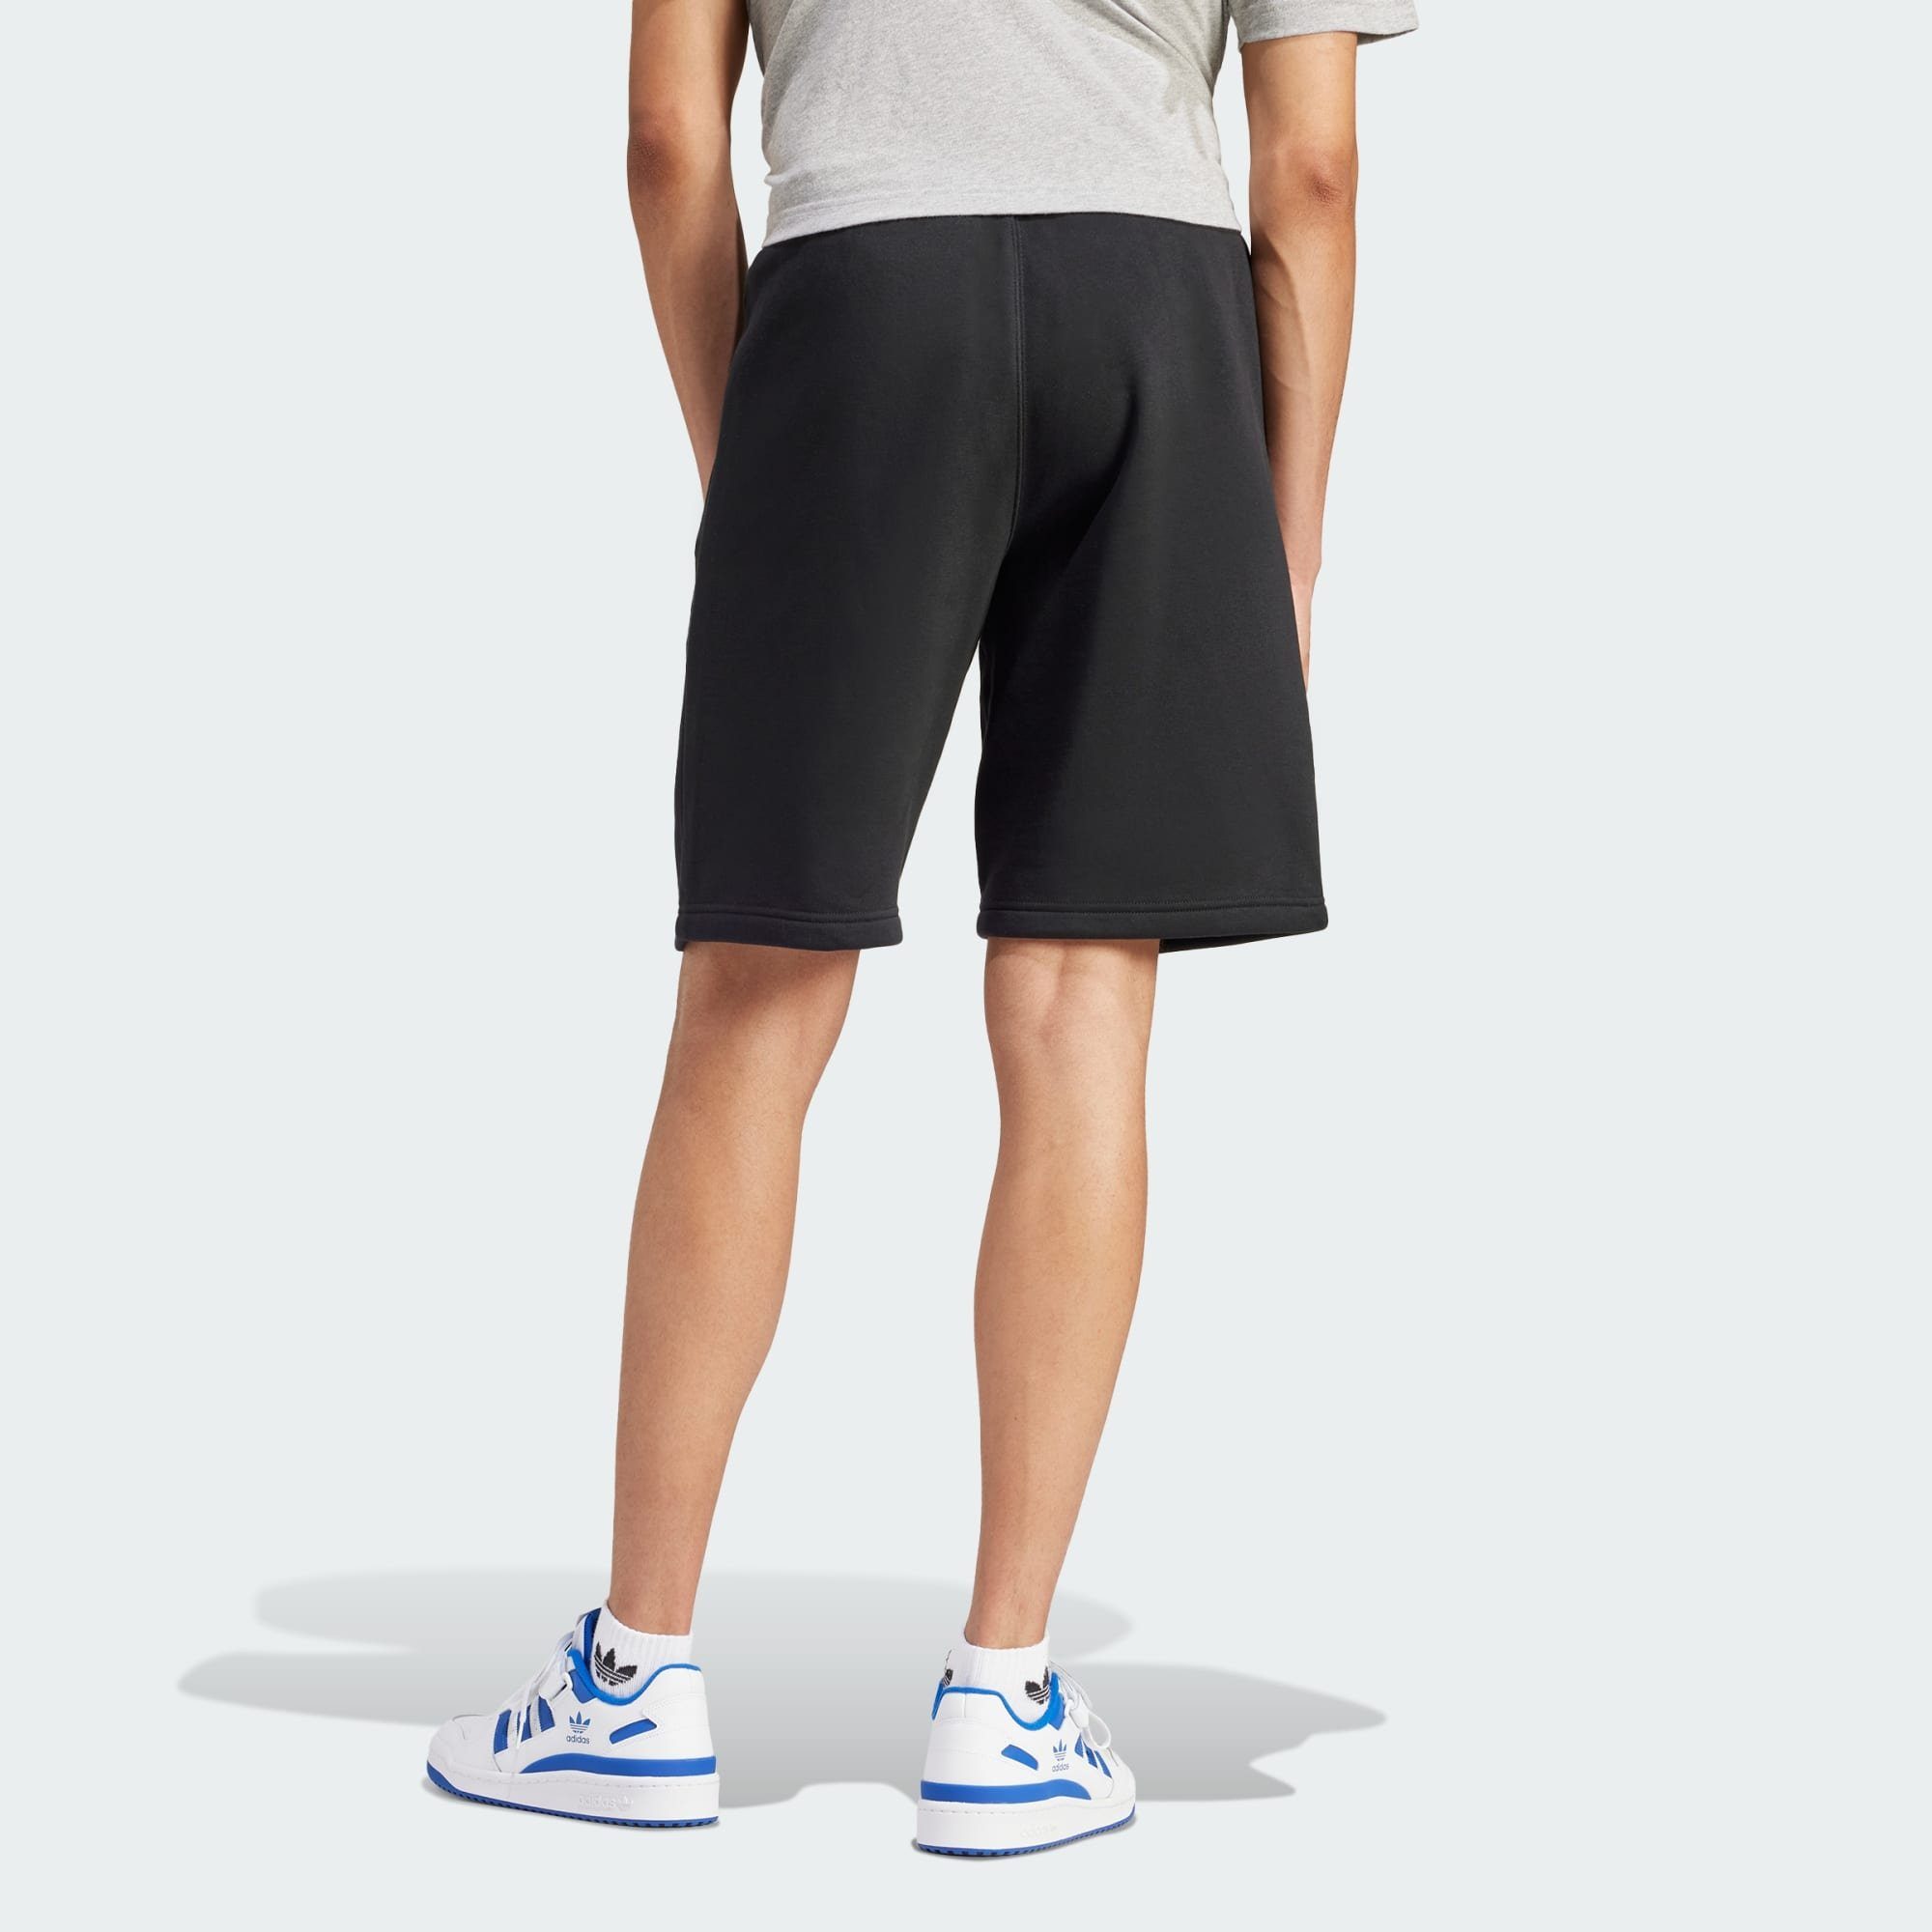 SHORTS ESSENTIALS Black Shorts adidas TREFOIL Originals